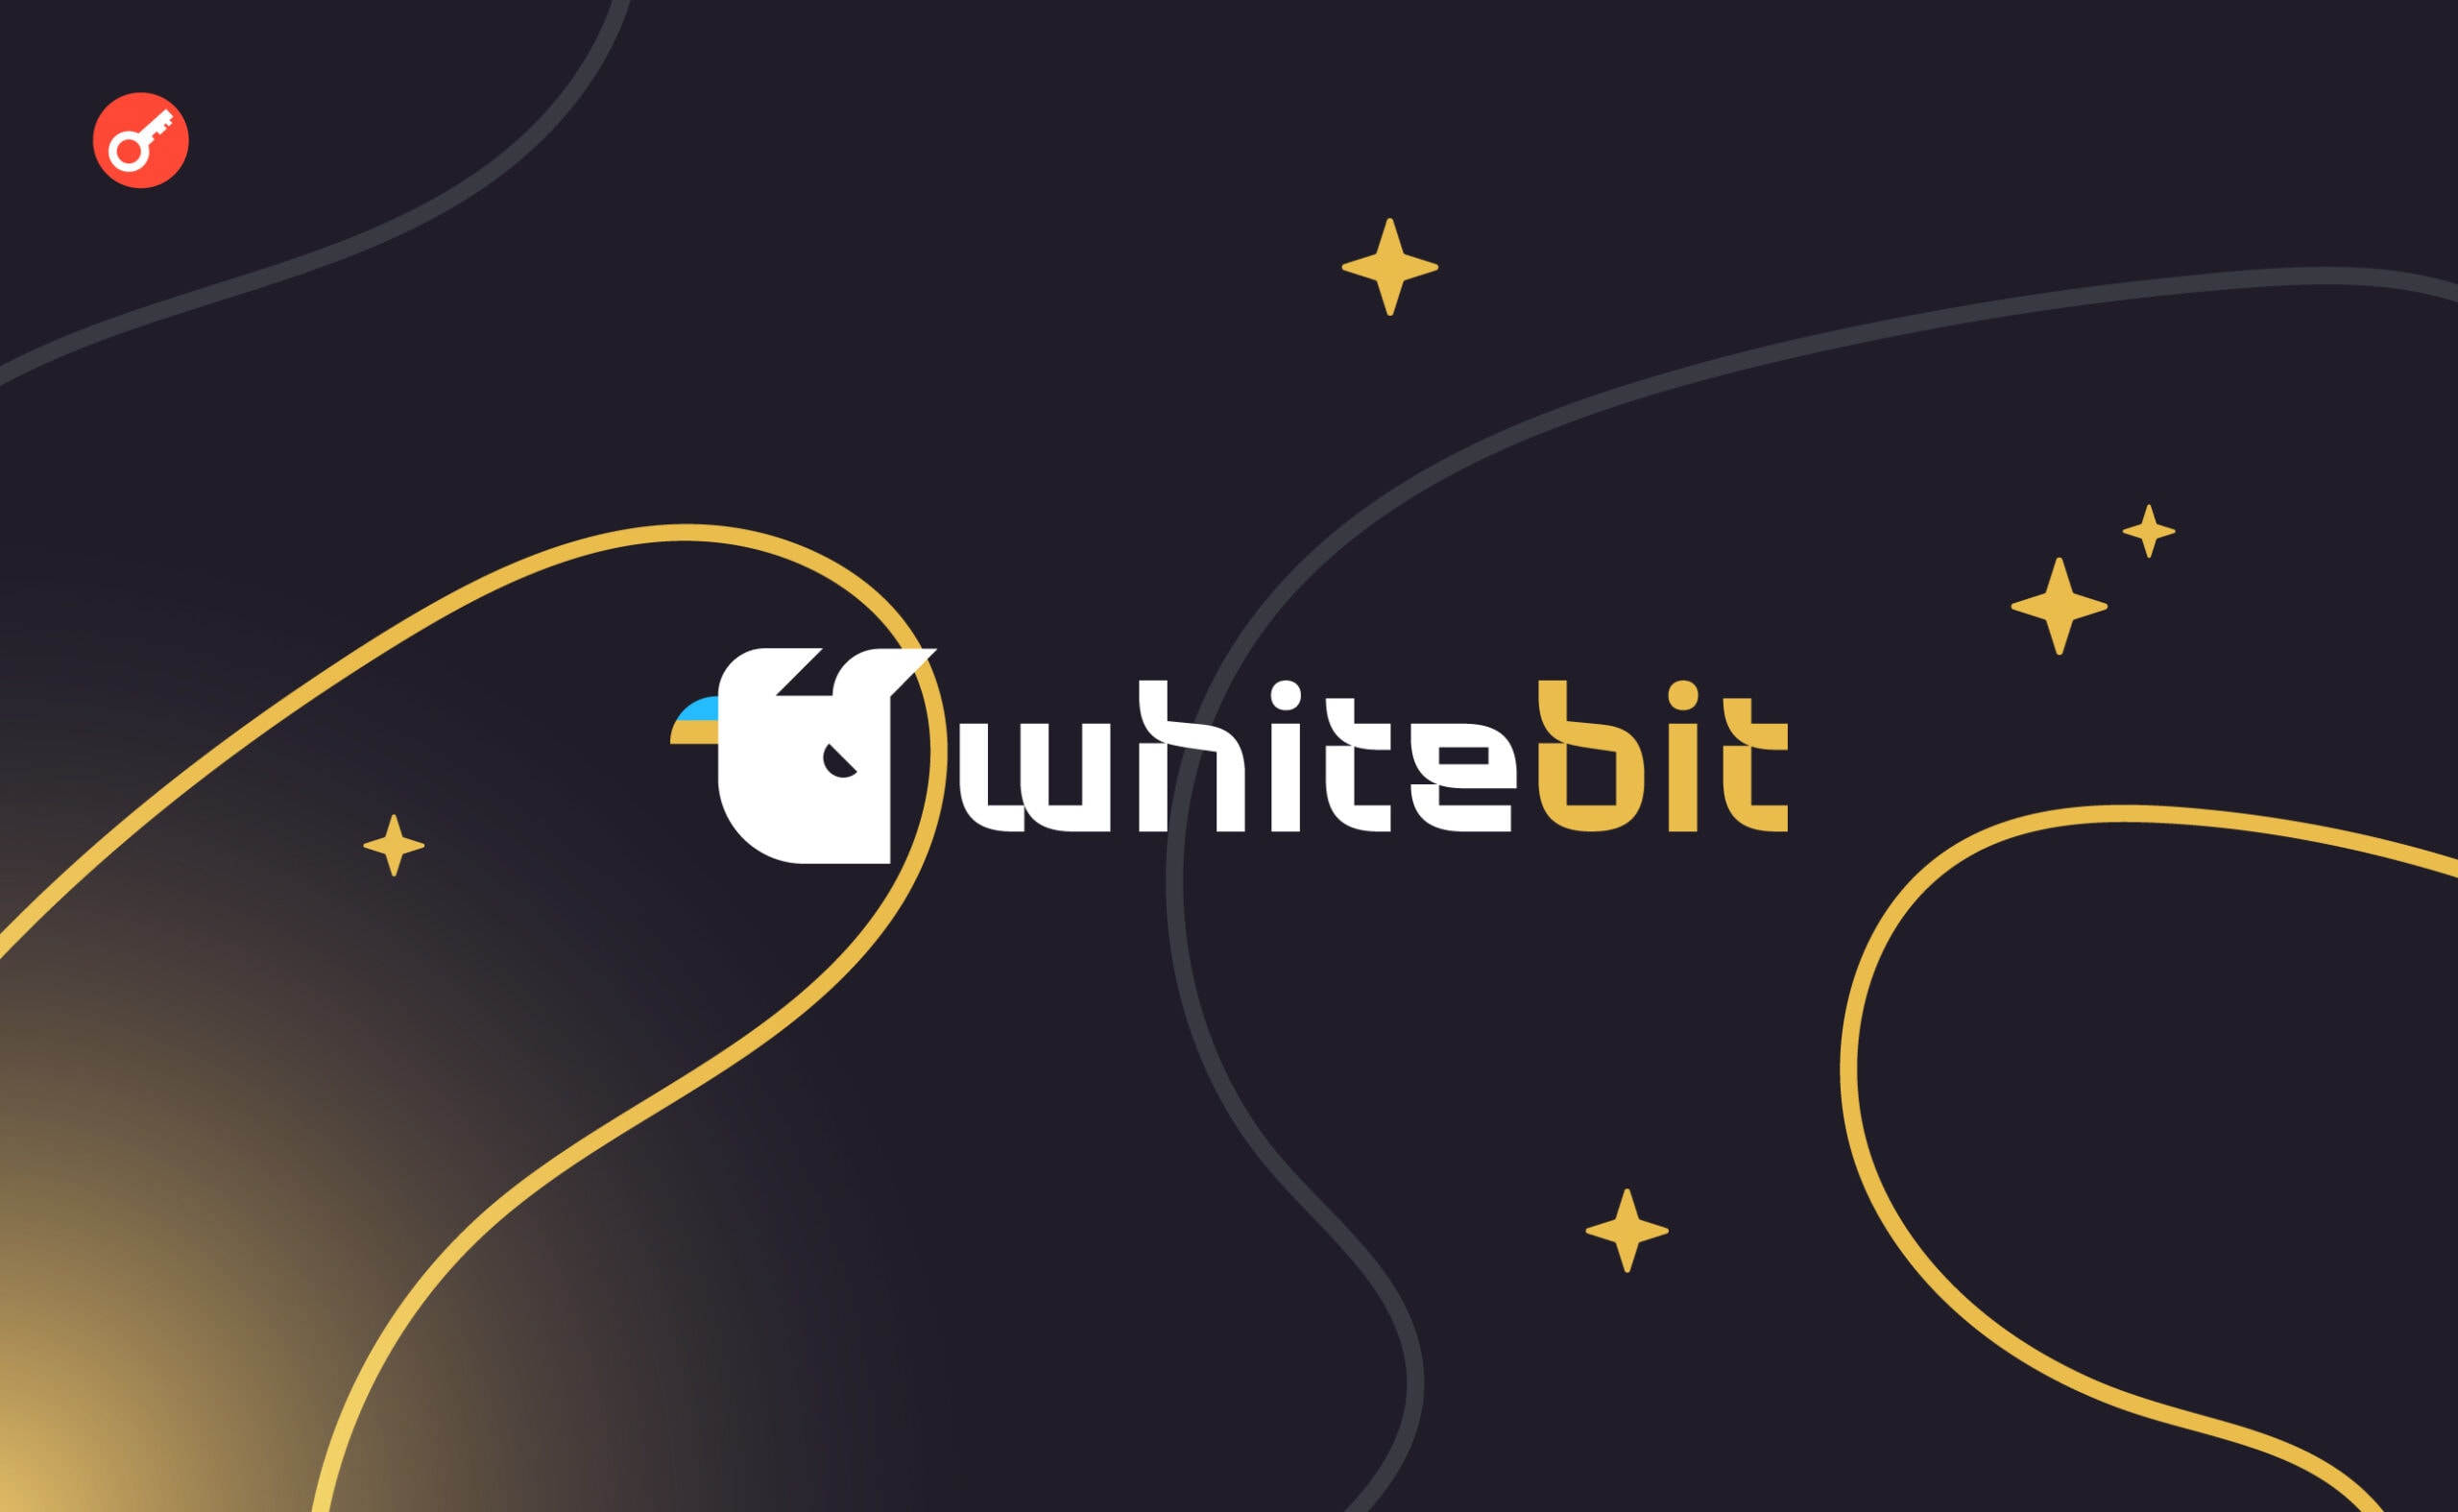 WhiteBIT анонсировала новые трейдинговые турниры с призами. Заглавный коллаж новости.